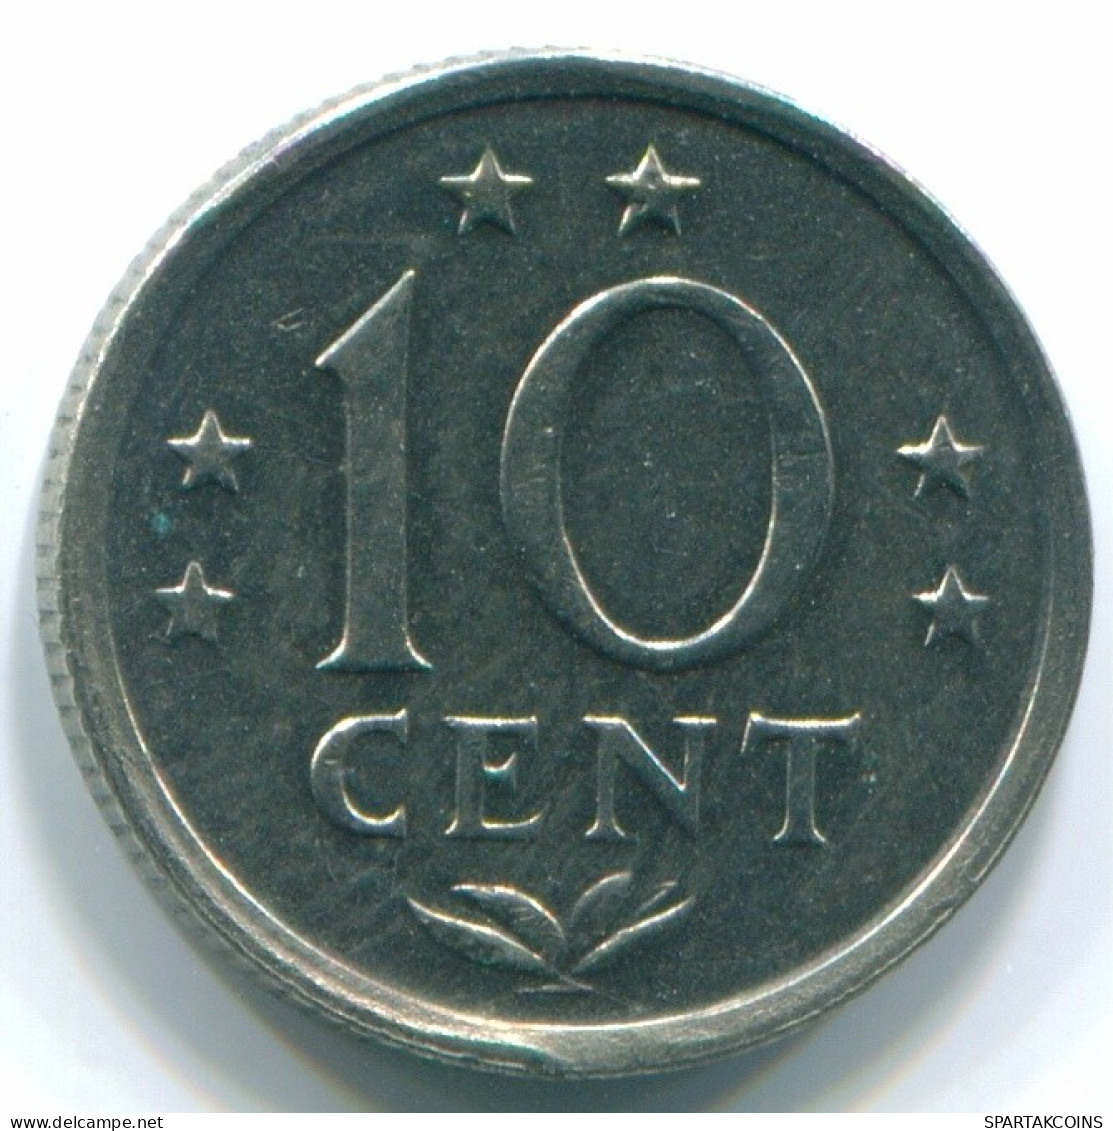 10 CENTS 1970 NIEDERLÄNDISCHE ANTILLEN Nickel Koloniale Münze #S13328.D.A - Niederländische Antillen